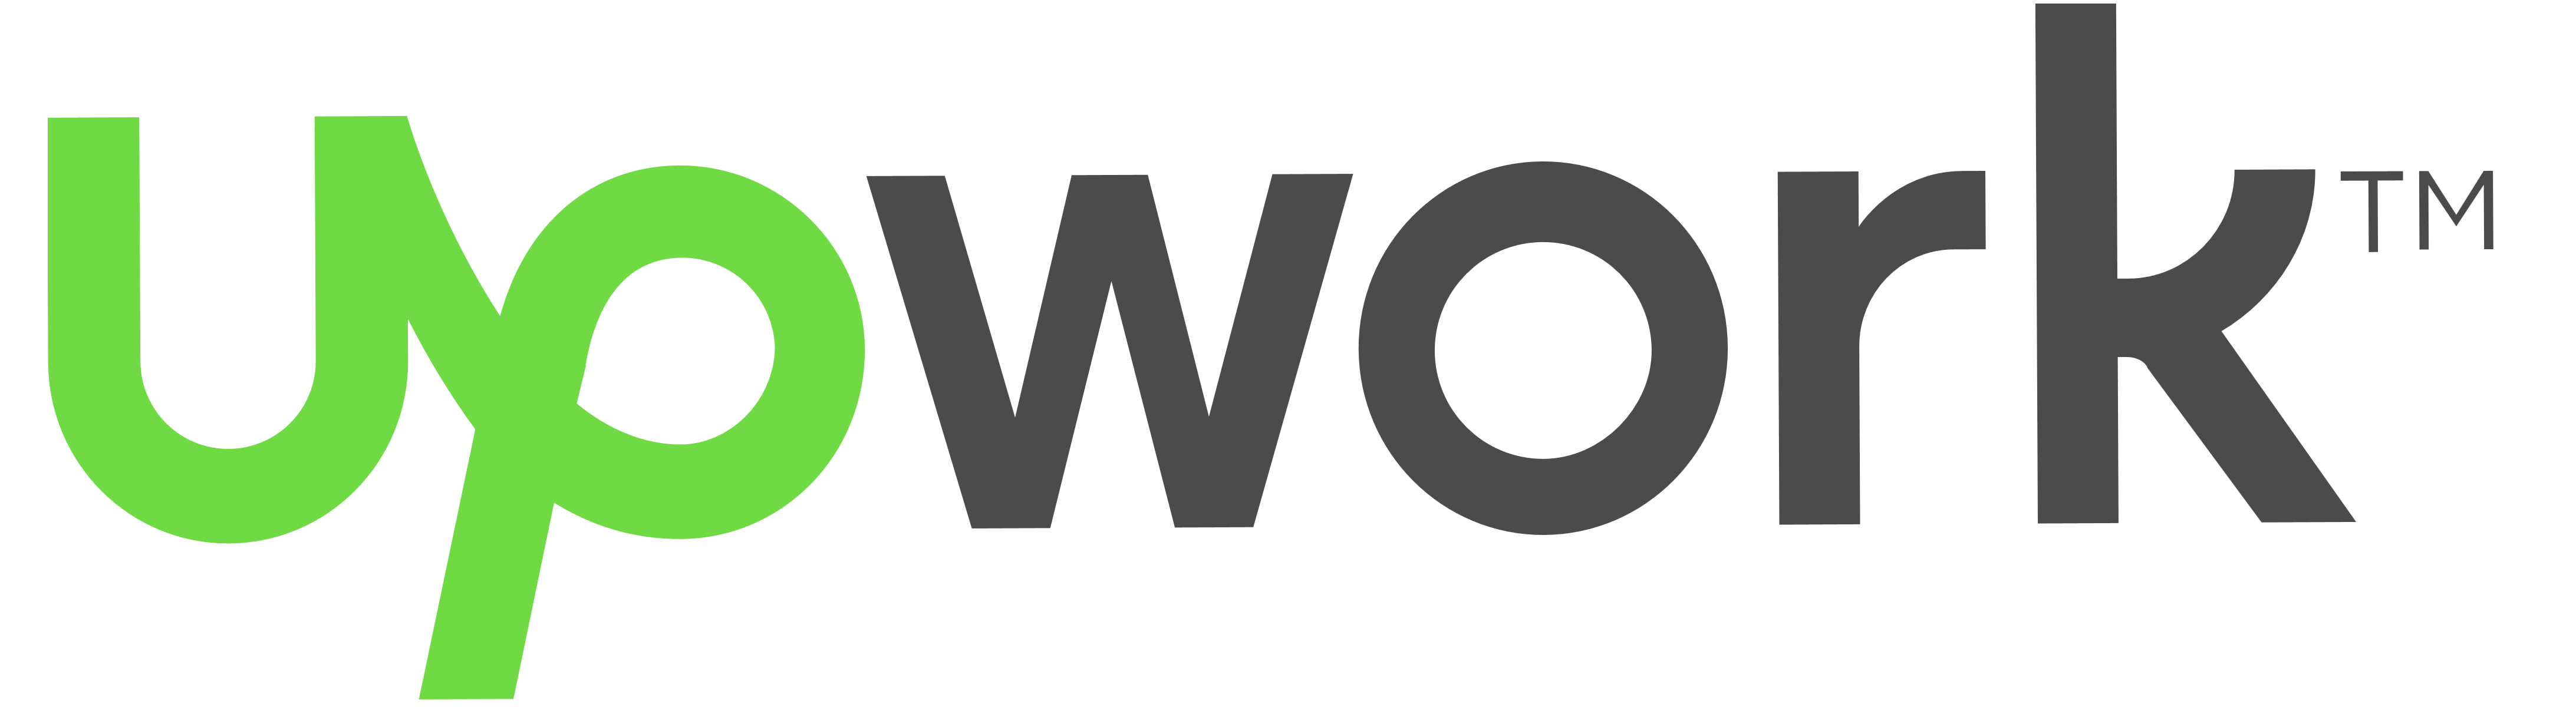 Upwork logo, logotype